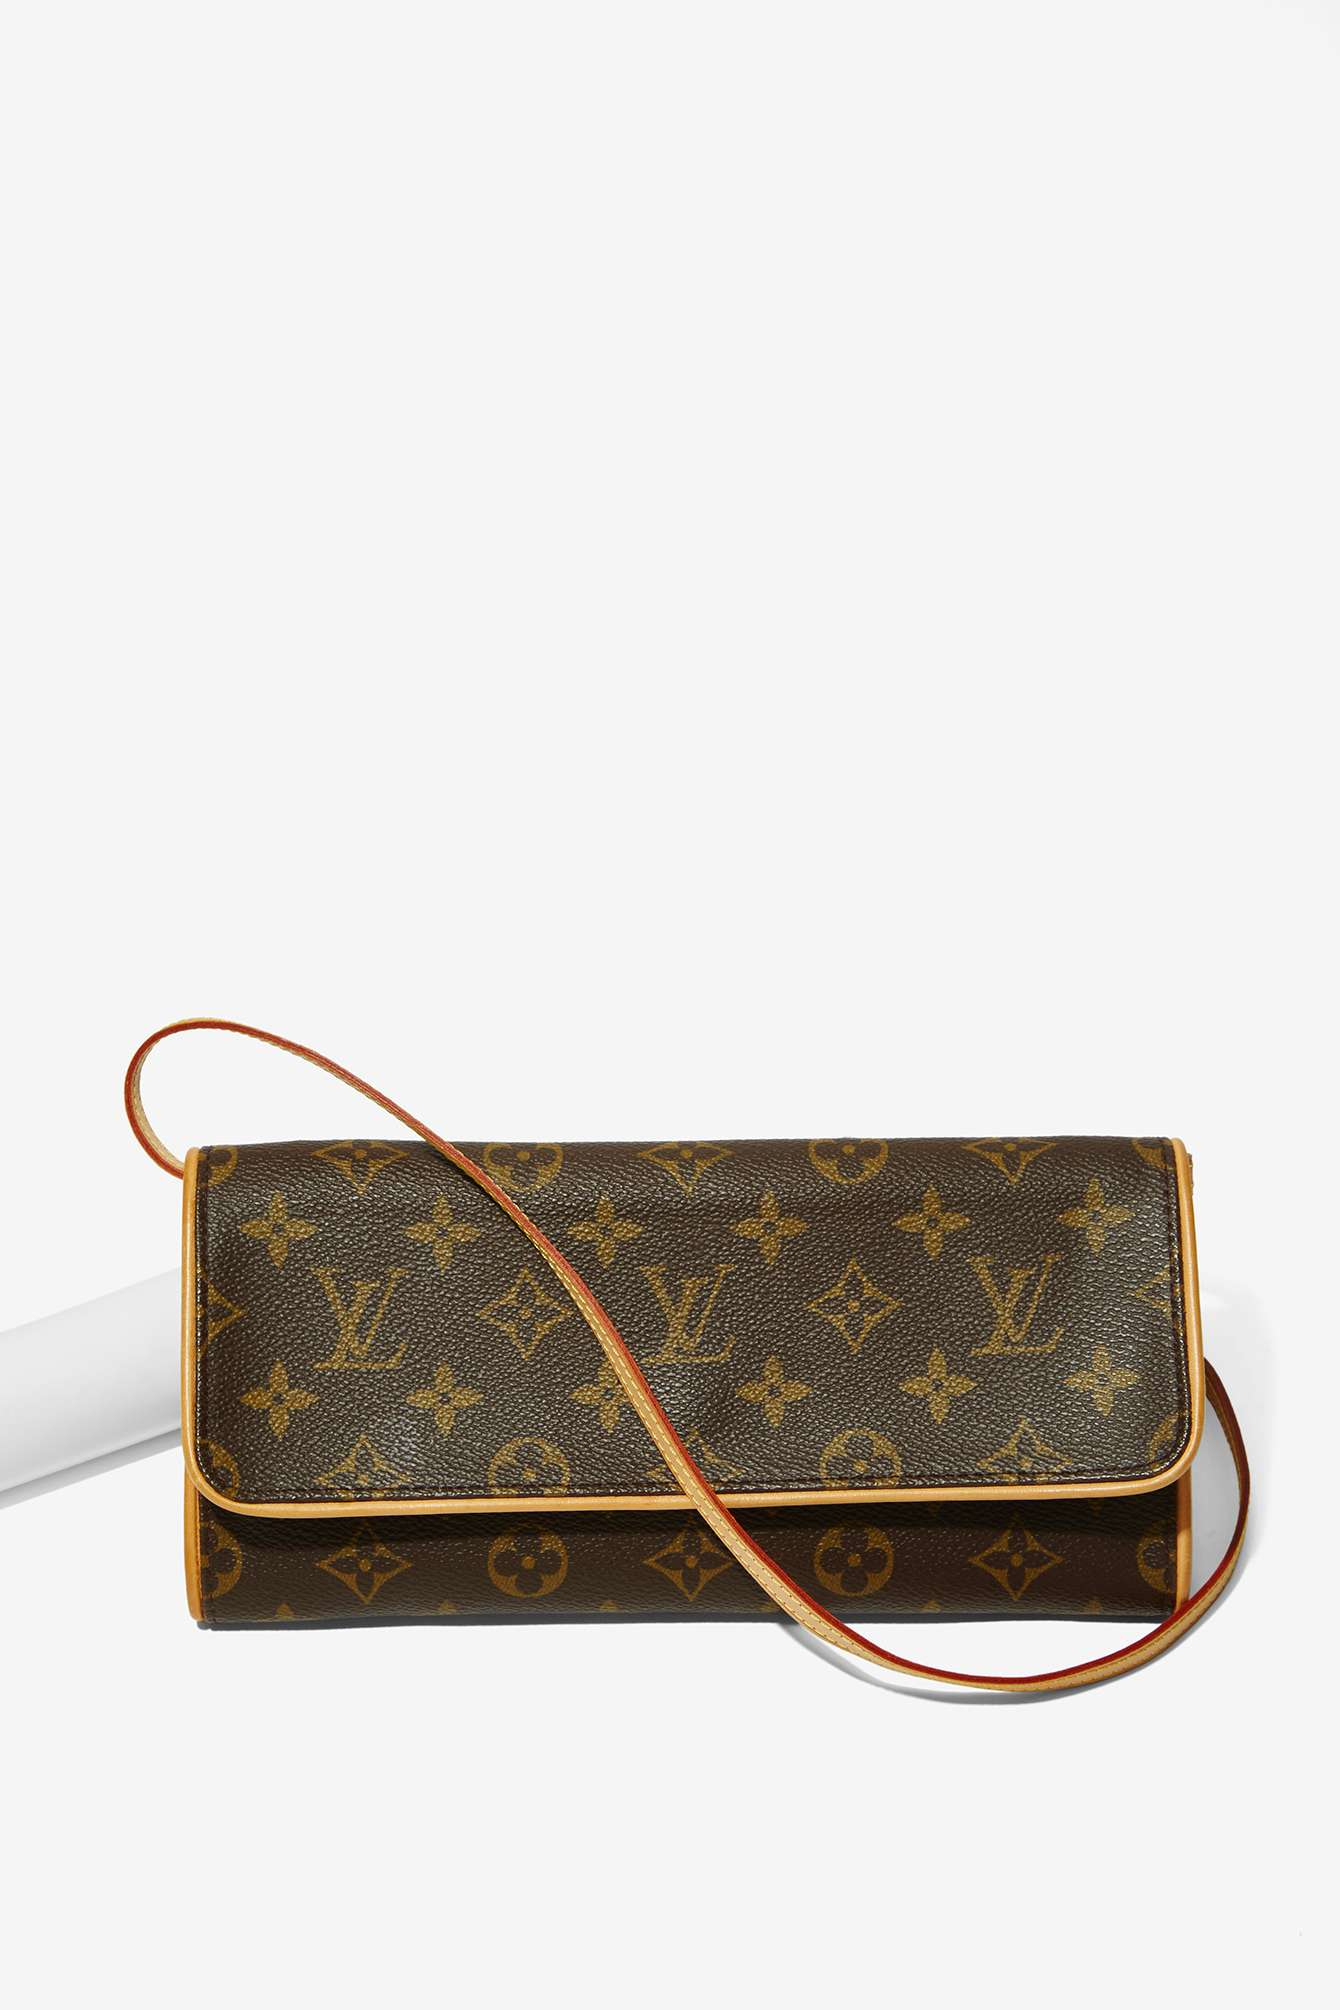 Lyst - Louis Vuitton Vintage Monogram Pochette Twin Gm Bag in Brown